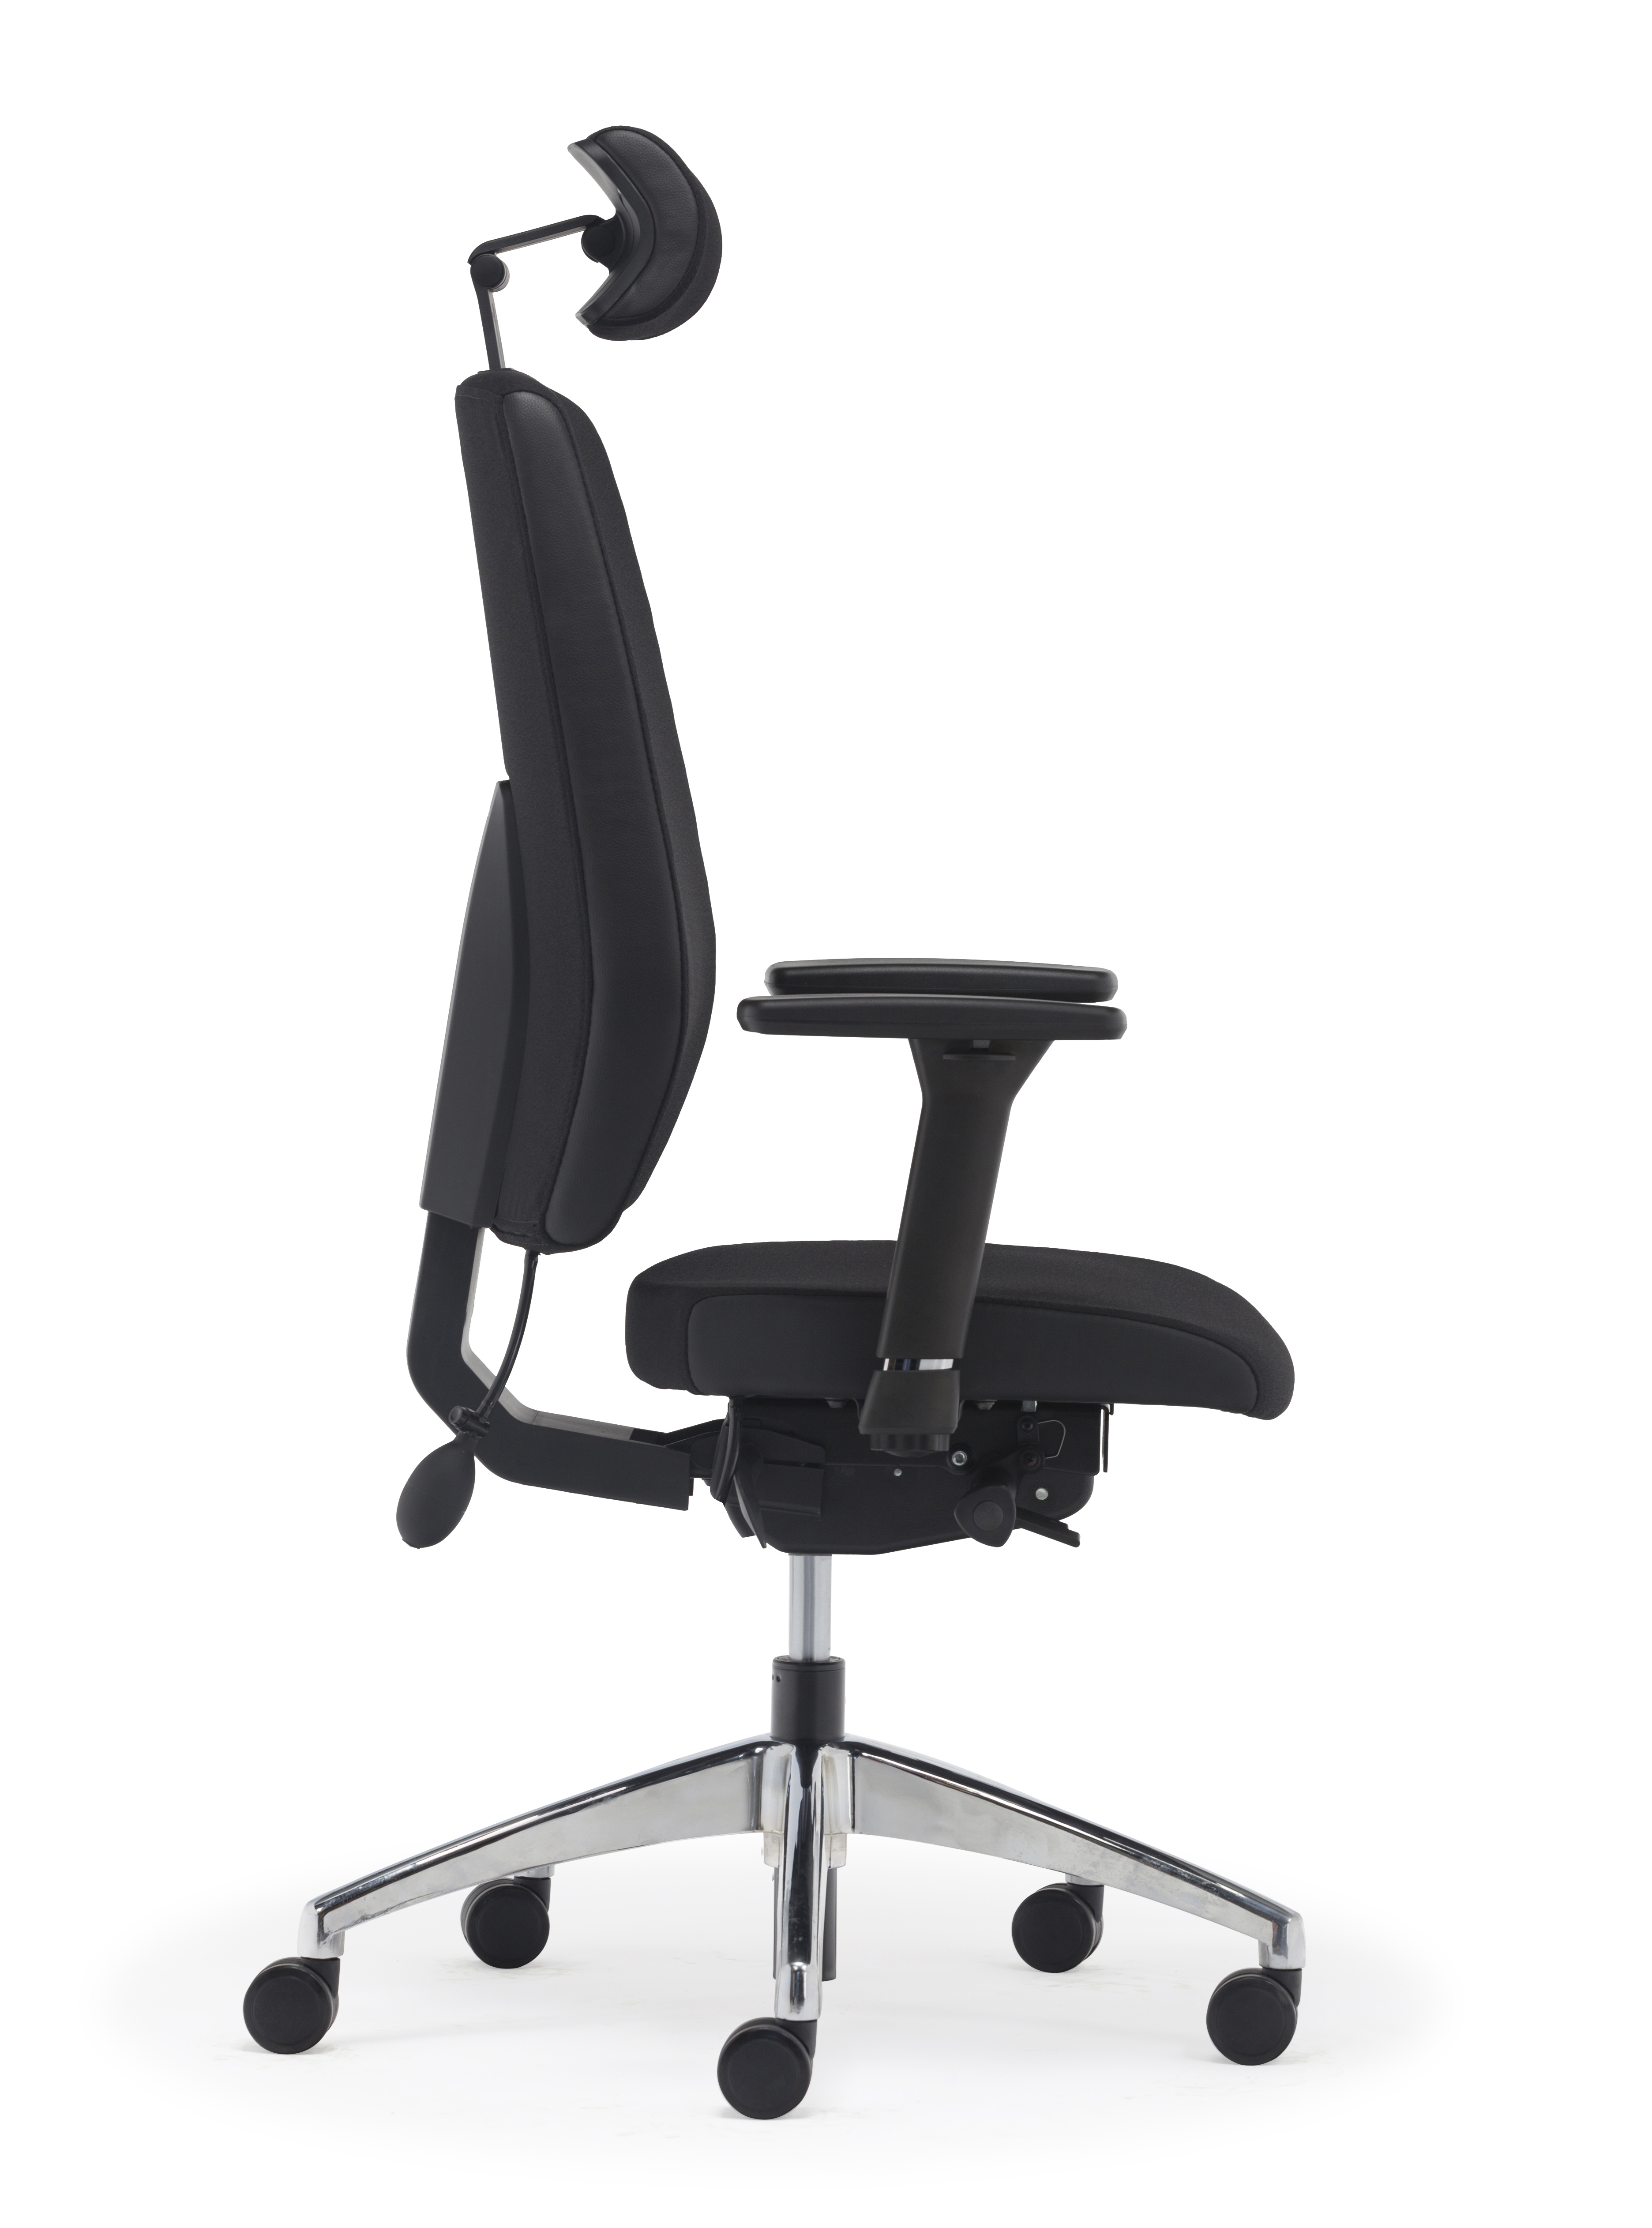 Cogra Executive Cantilever Chair Black